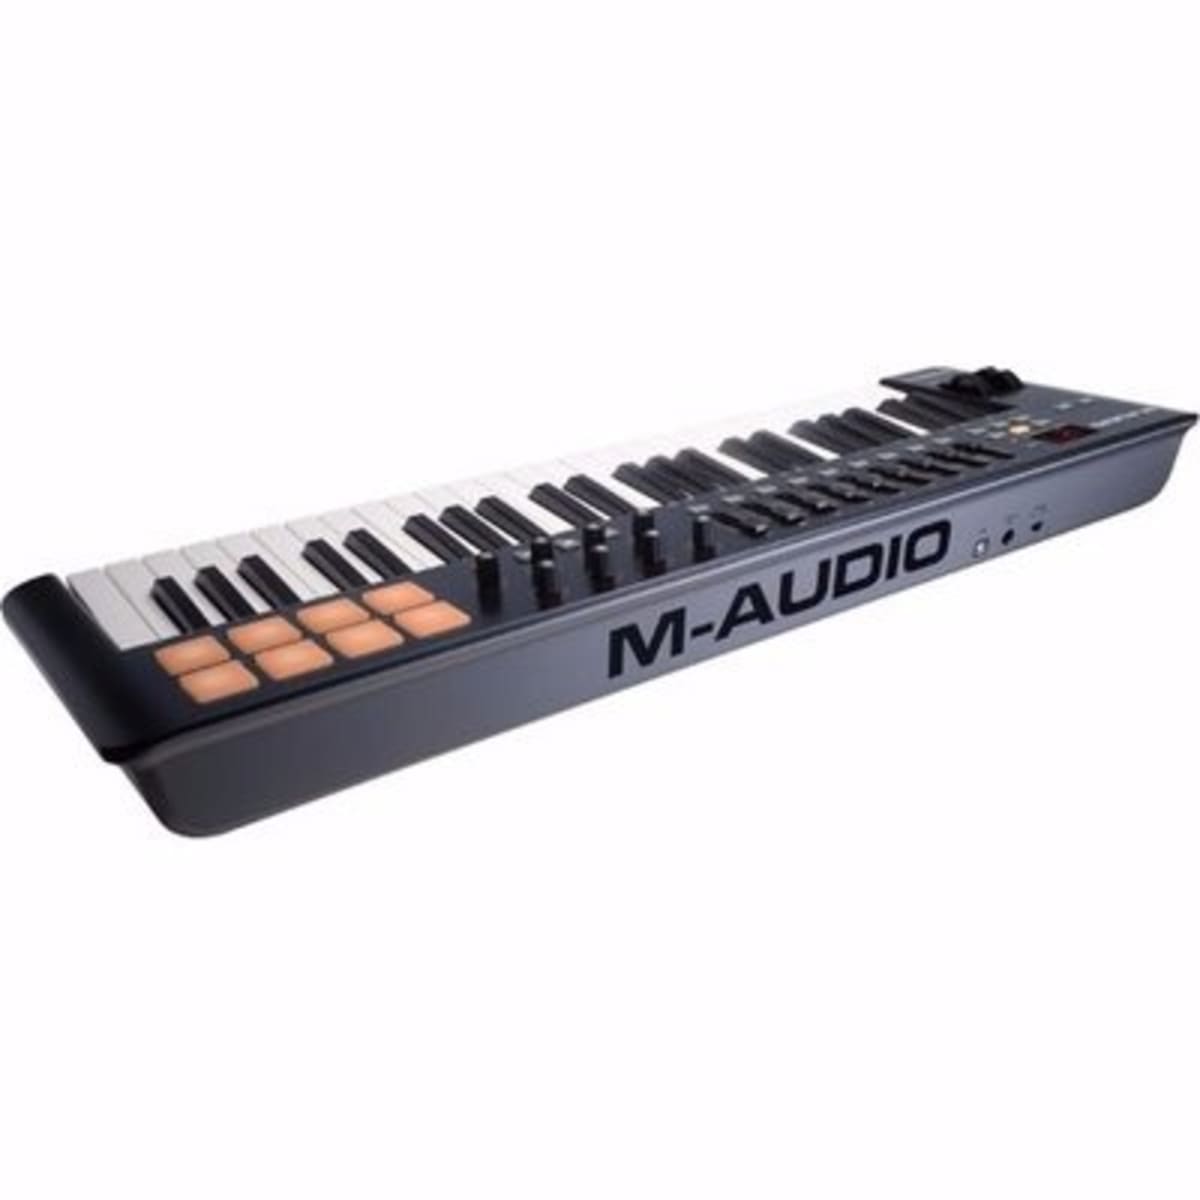 Usb Midi Converter Music, Accessories Midi Keyboard